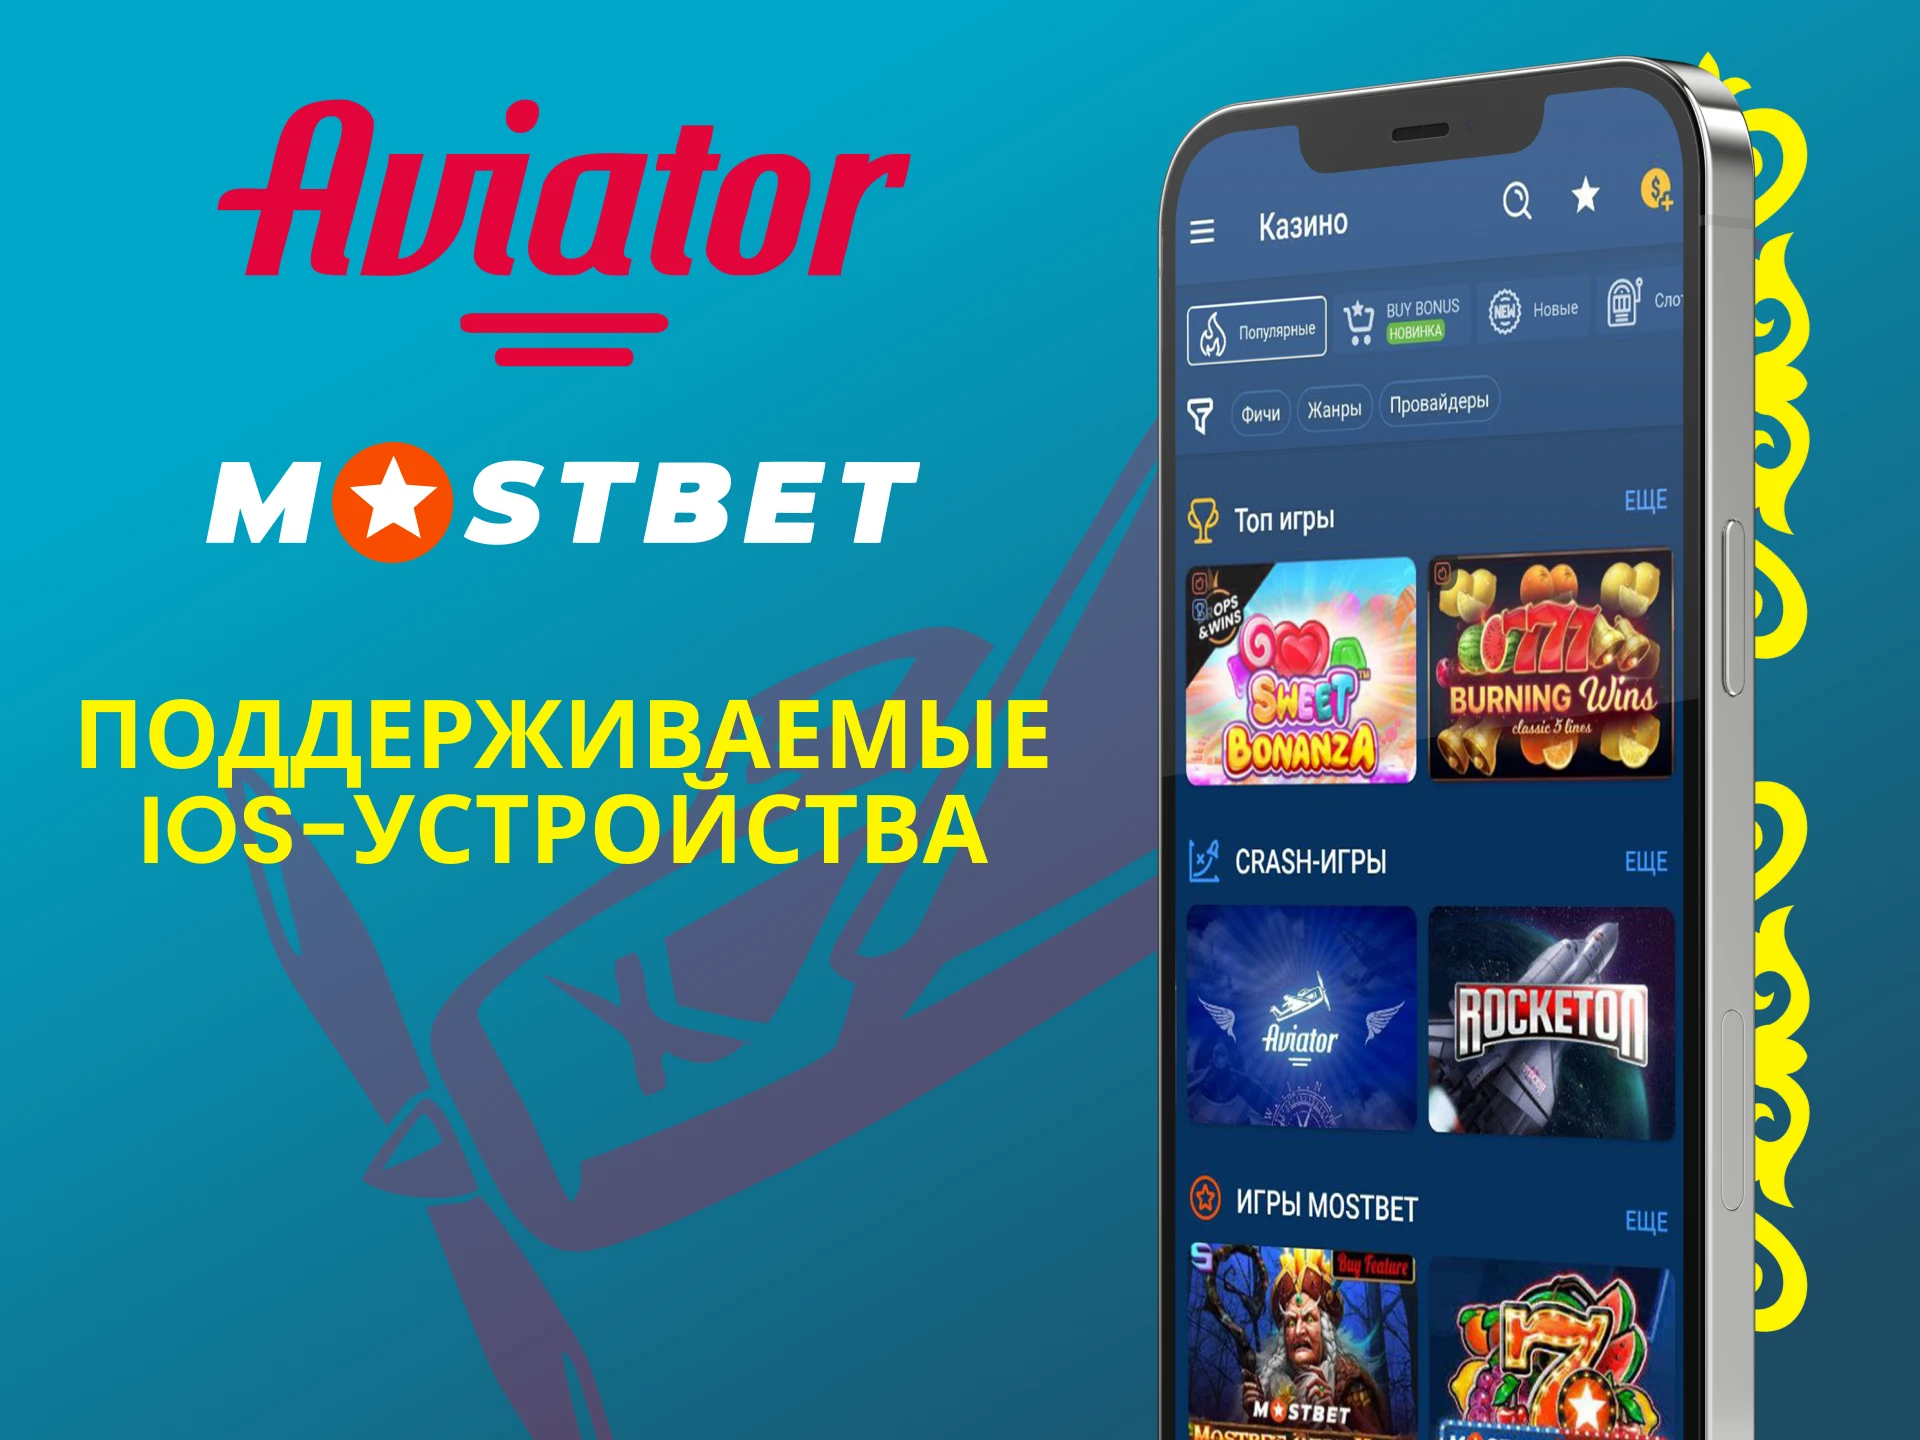 Играй в Авиатор через приложение Mostbet для iOS.